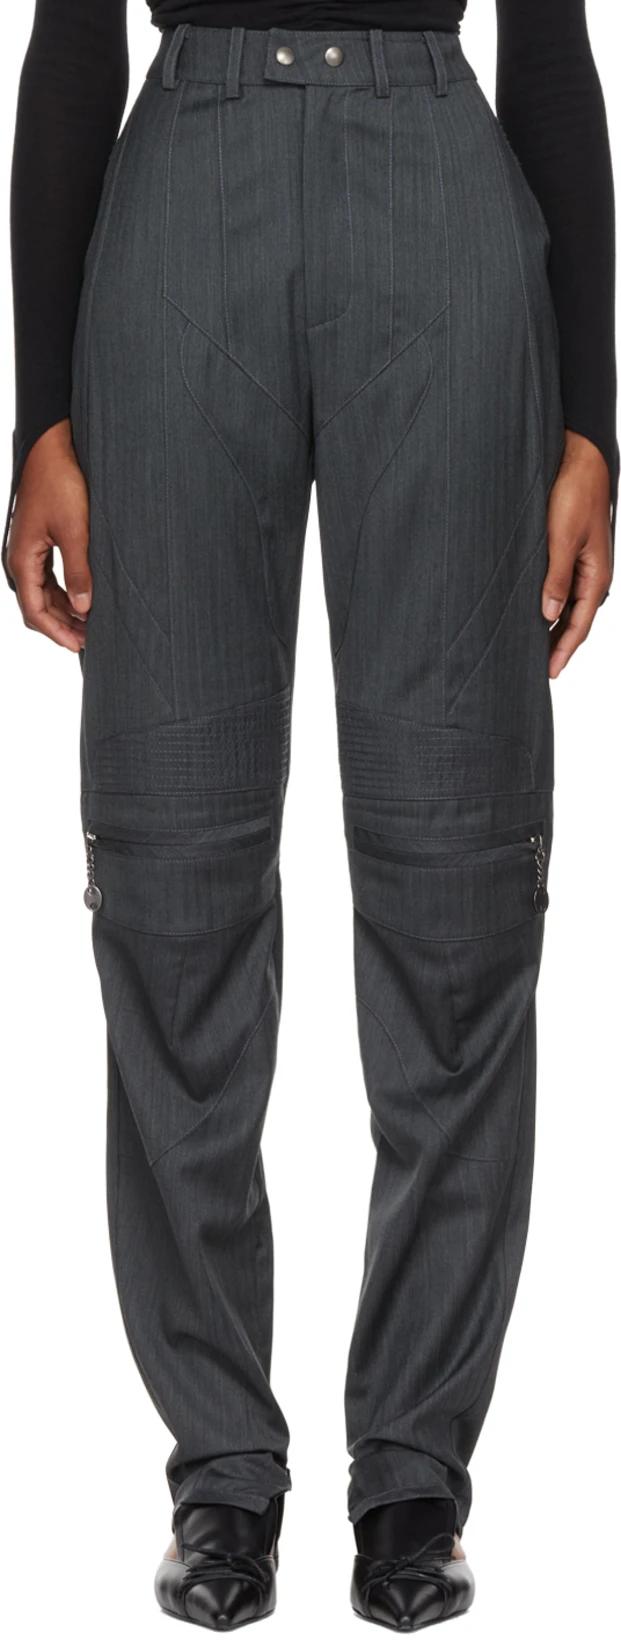 Gray Lea Trousers by BONBOM